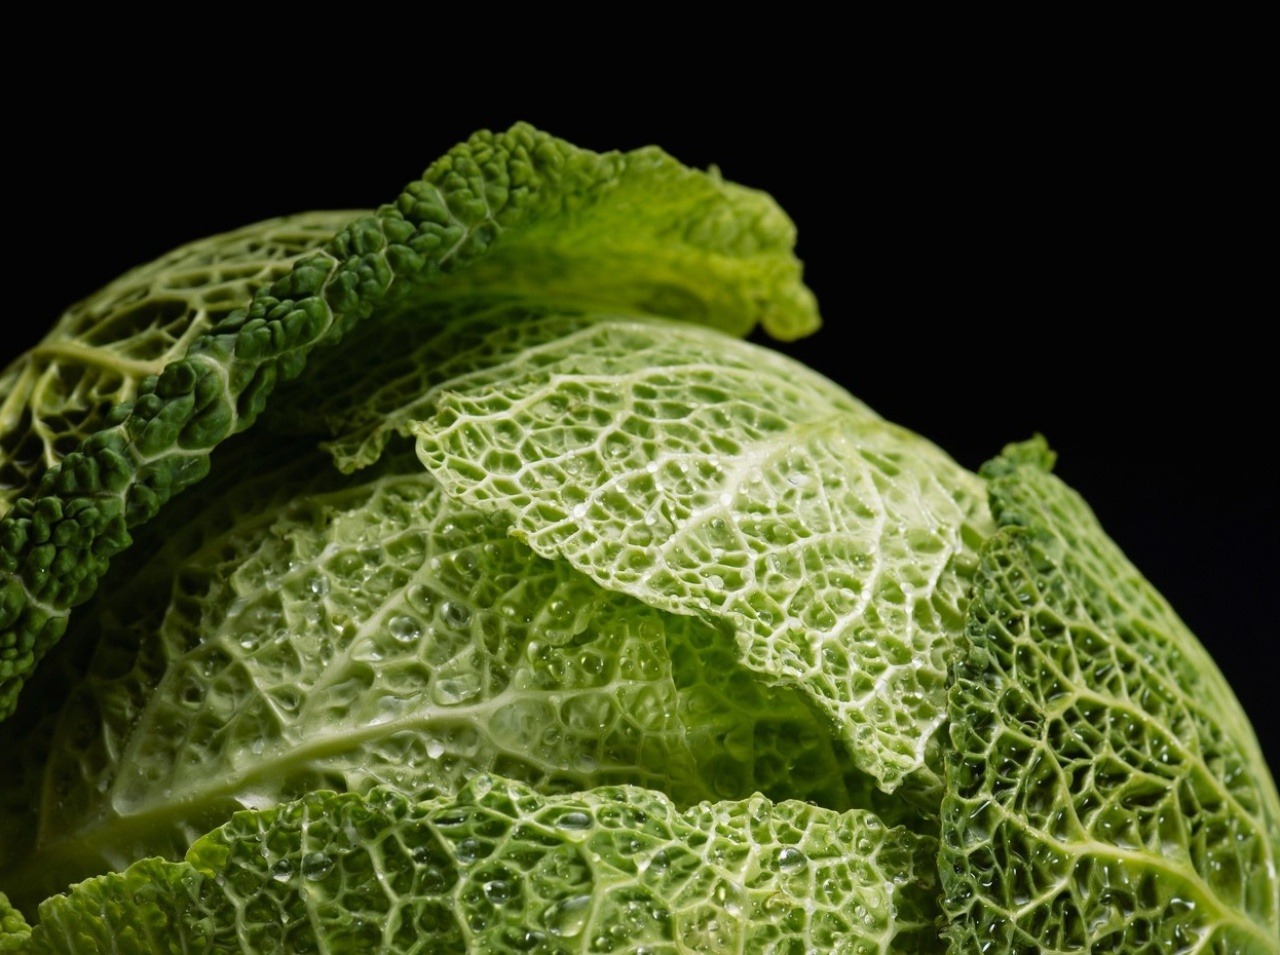 Kapusta je veľmi zdravá zelenina, ktorá bojuje proti rakovine!